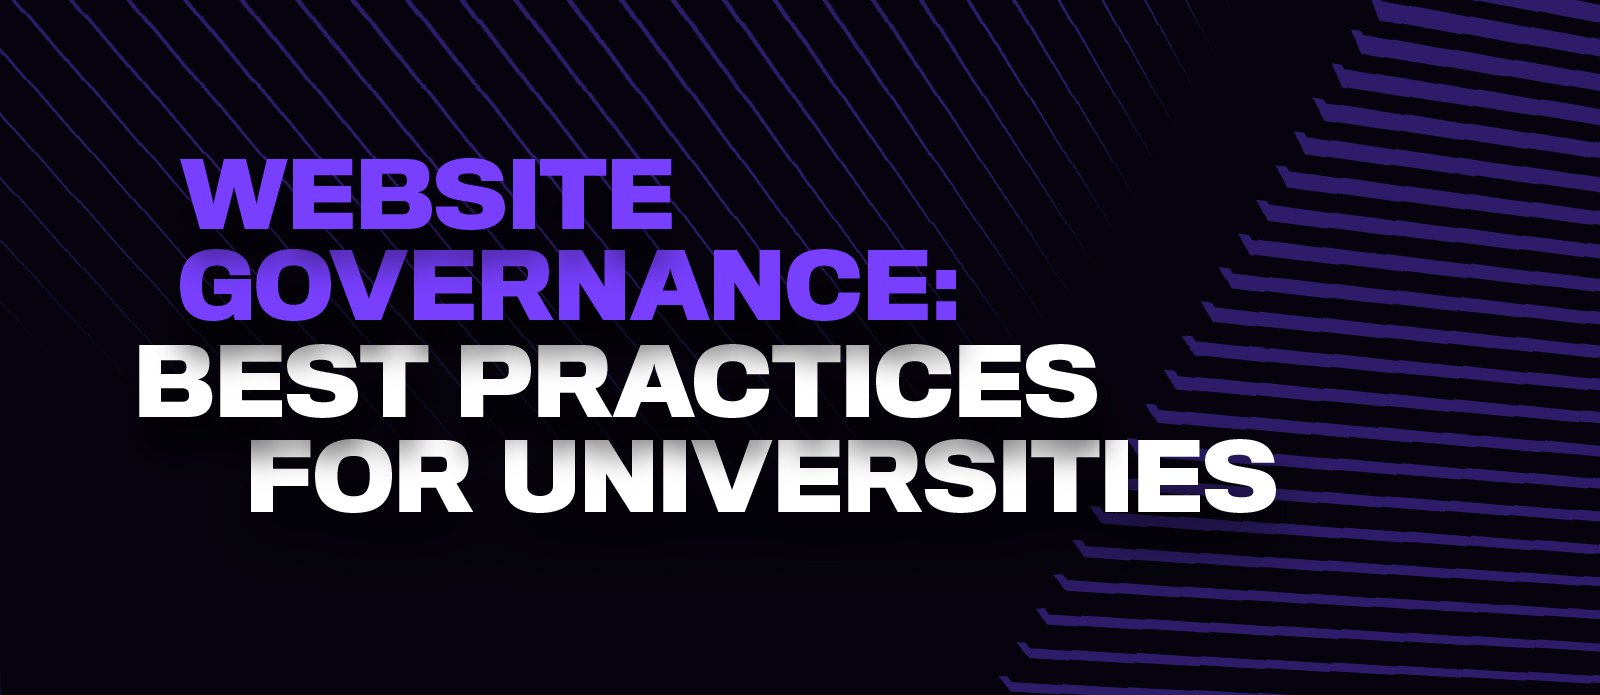 Website Governance: Best practices for universities